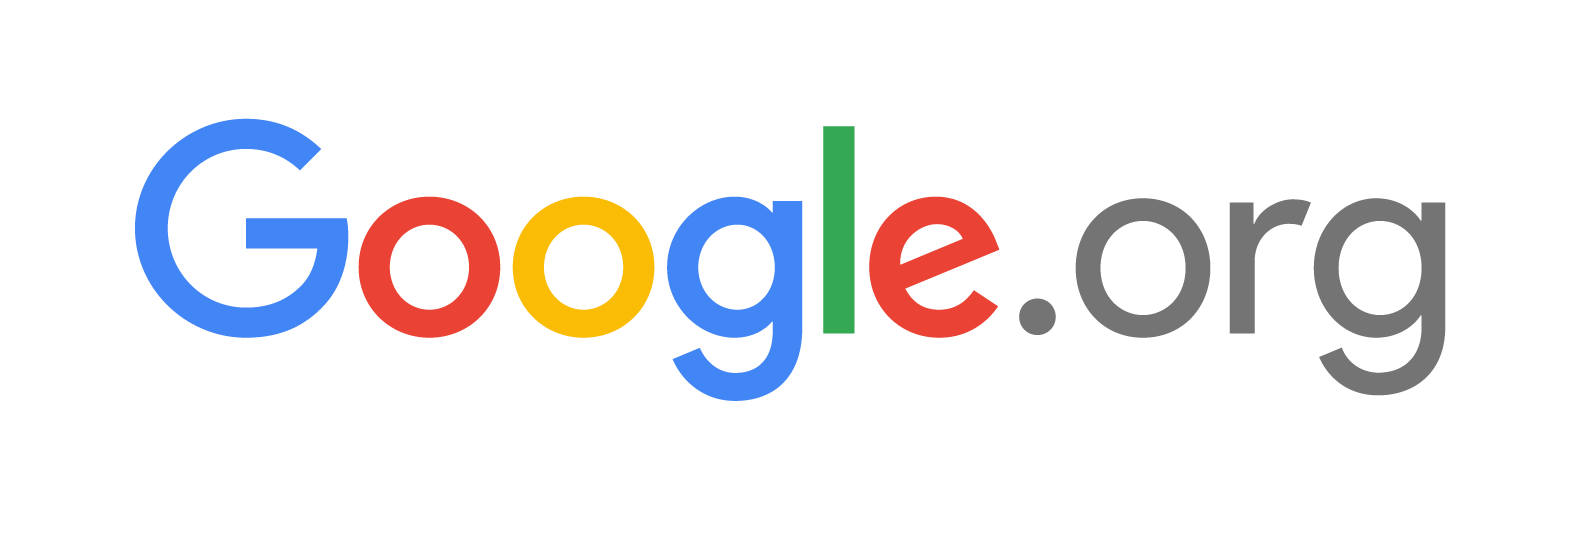 Google.orgのロゴ